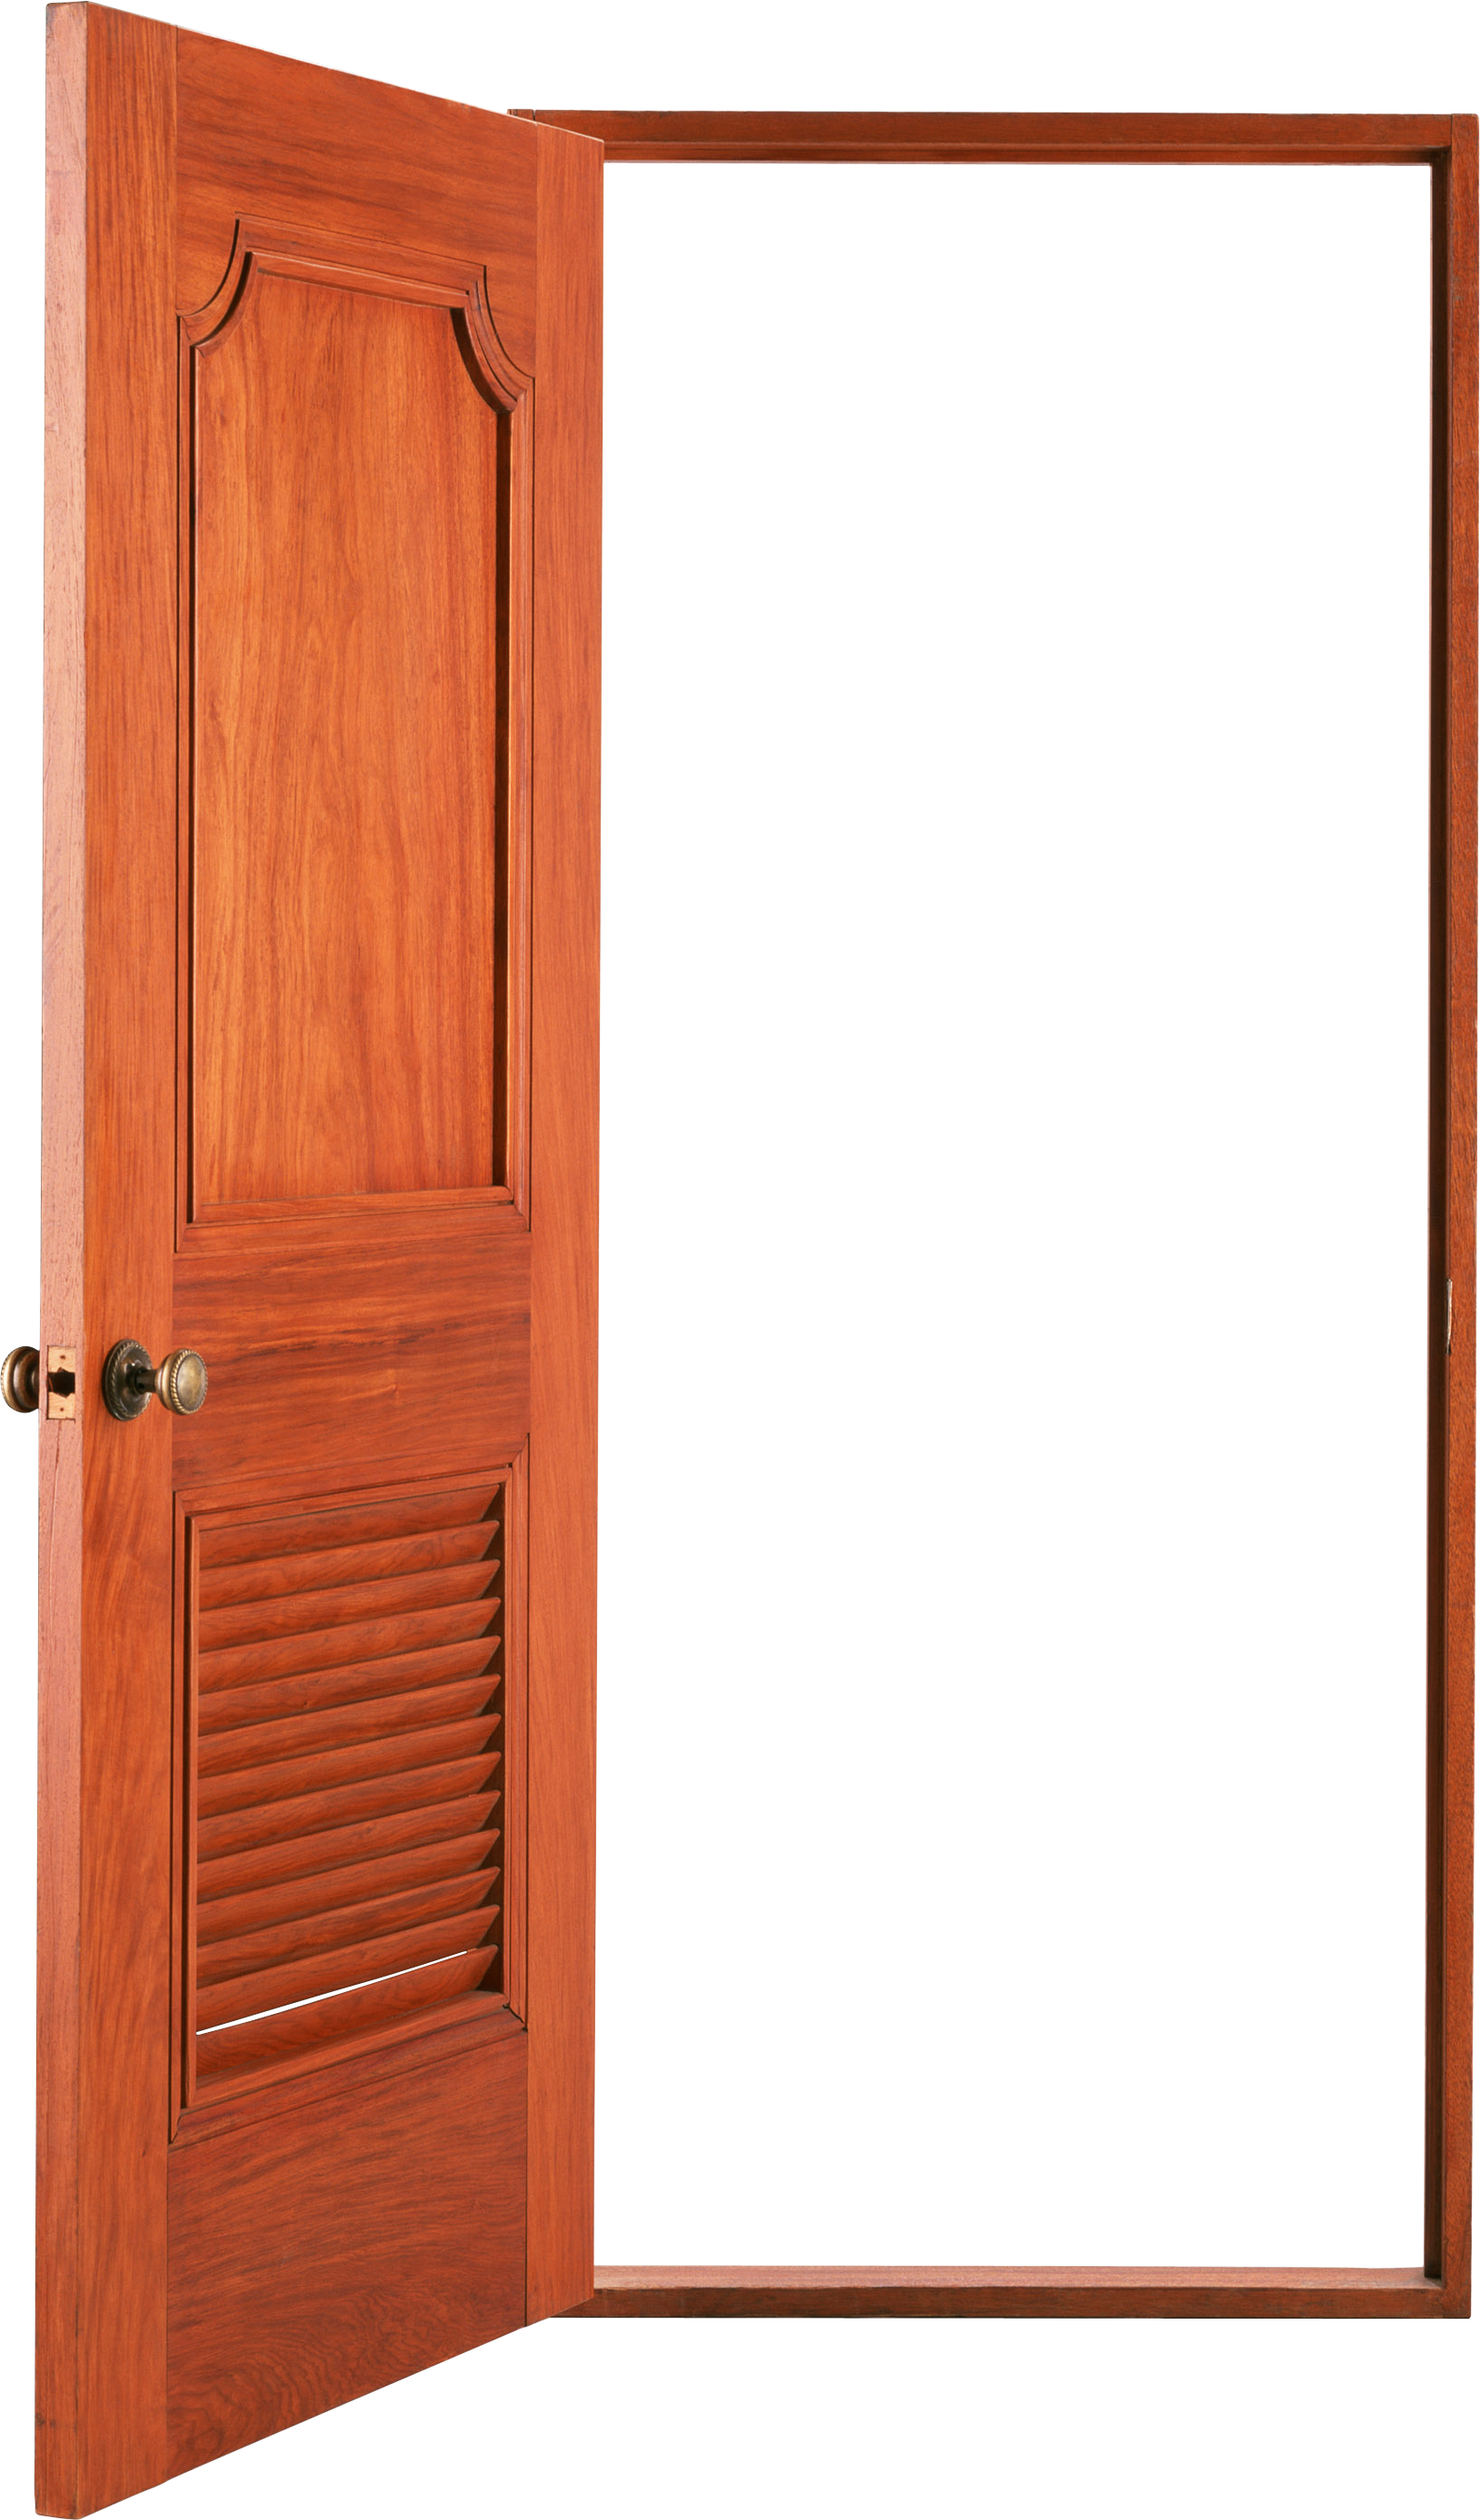 Open Door Transparent Background Clipart (1631x2778), Png Download